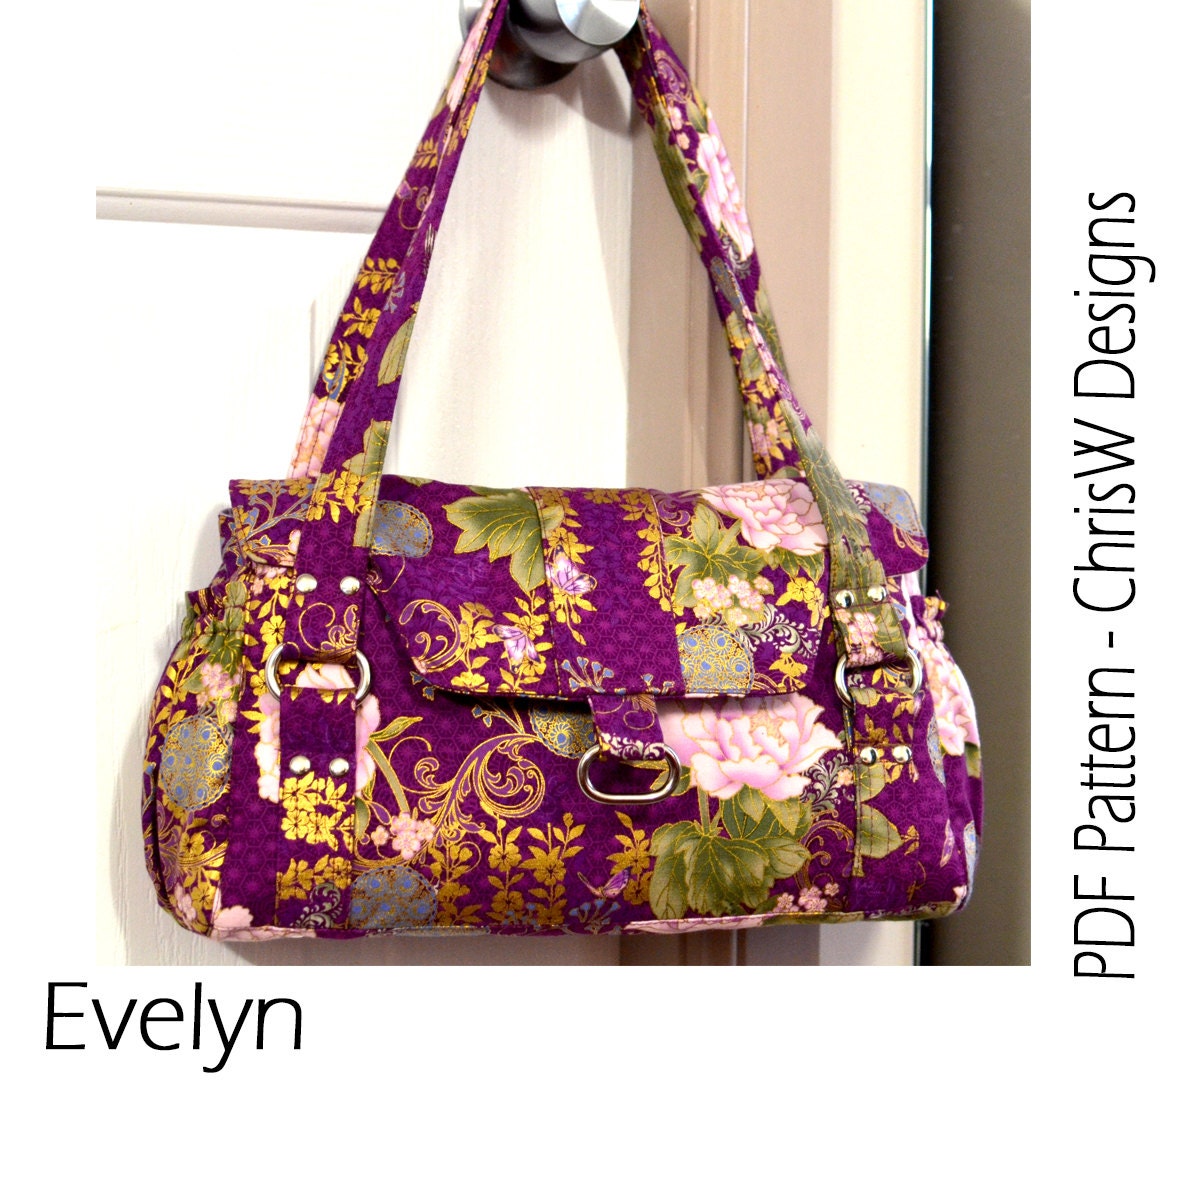 Bag Pattern for the Evelyn Handbag Designer Purse Floral or